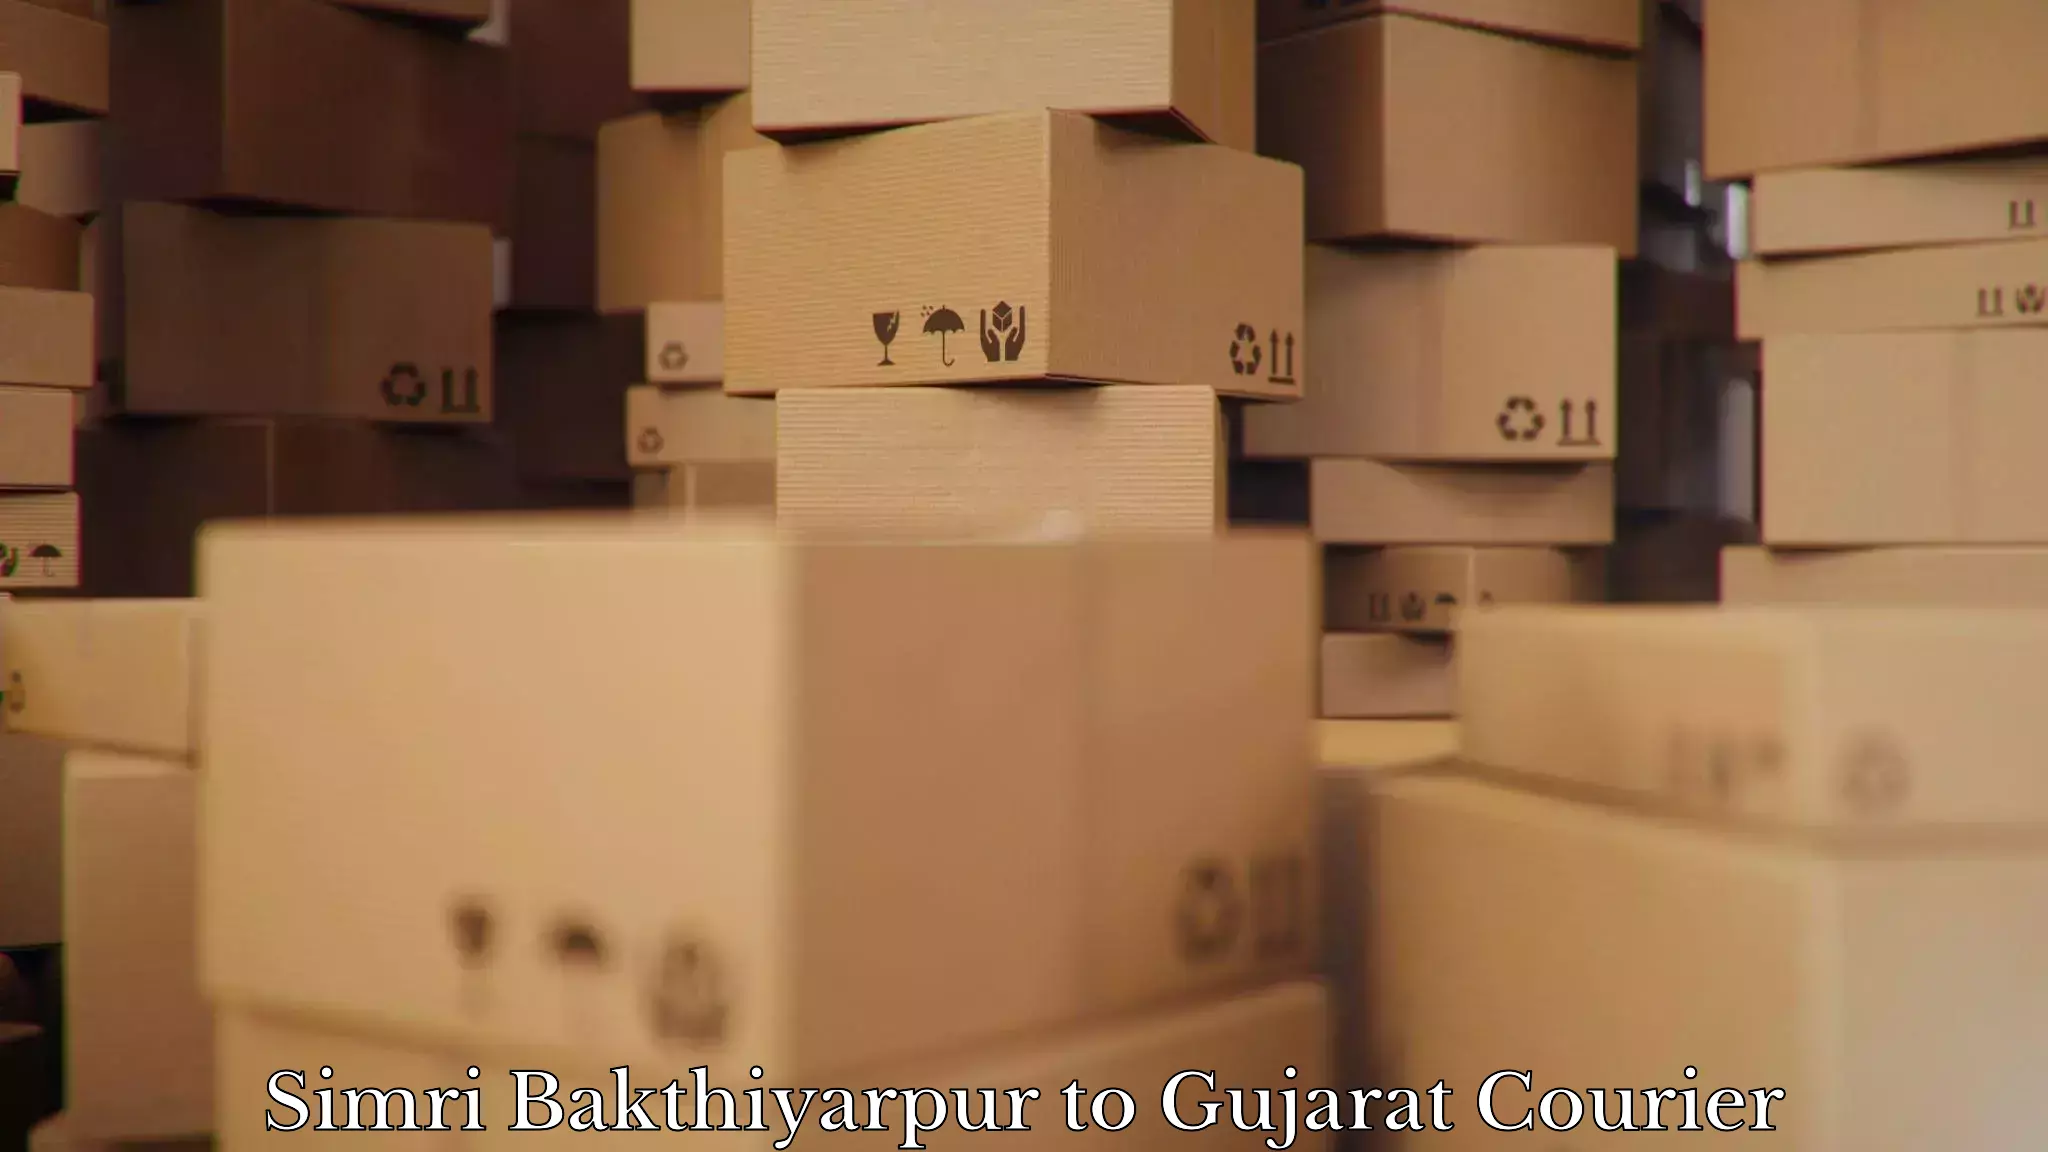 Furniture transport experts Simri Bakthiyarpur to Kalol Gujarat